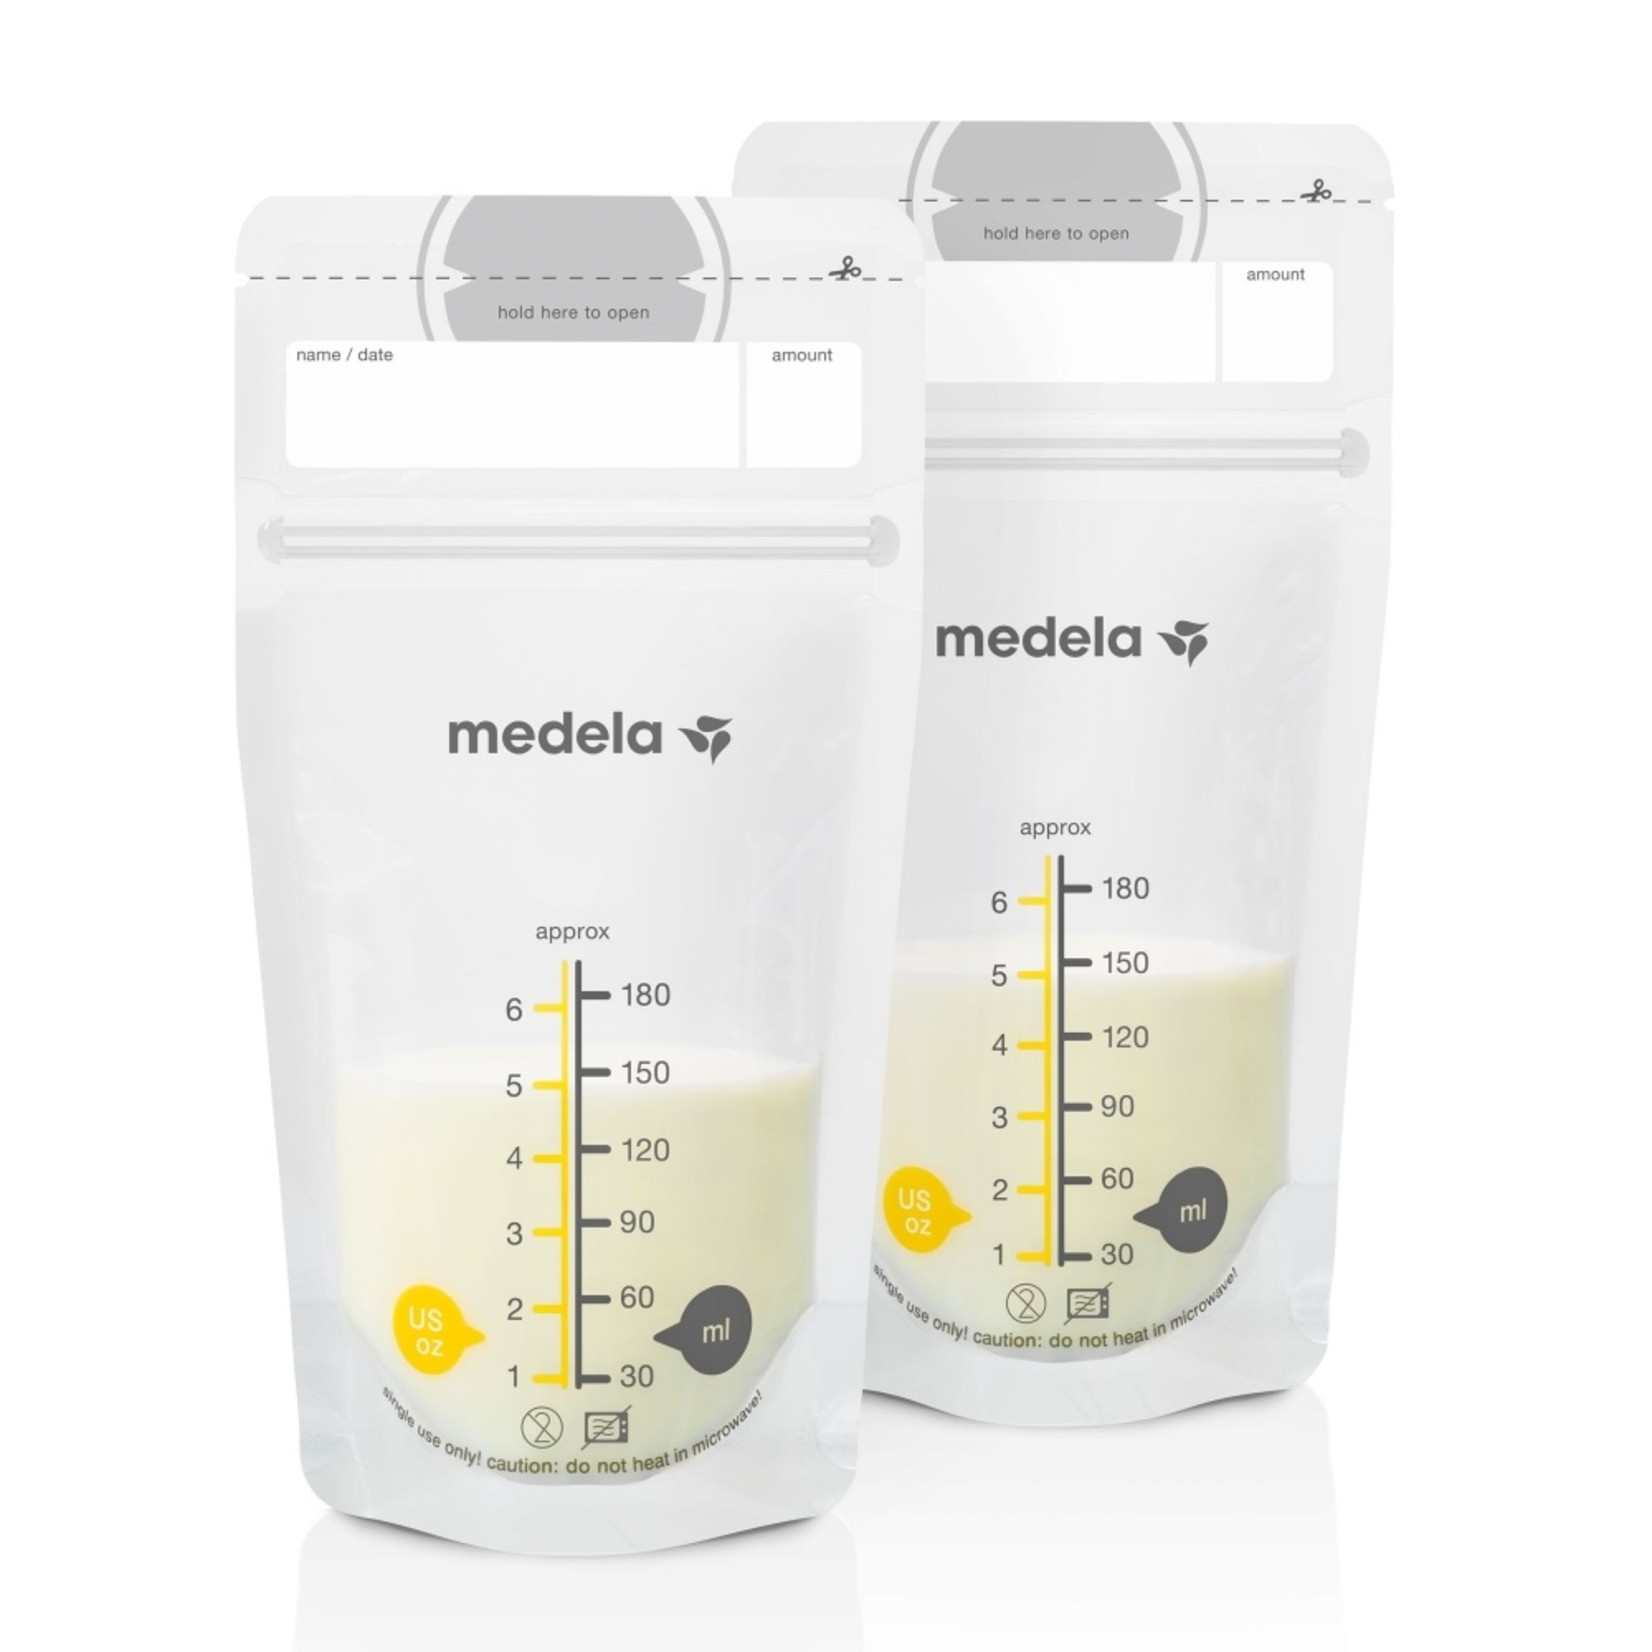 Medela Medela Breast Milk Storage Bags (25 Bags)